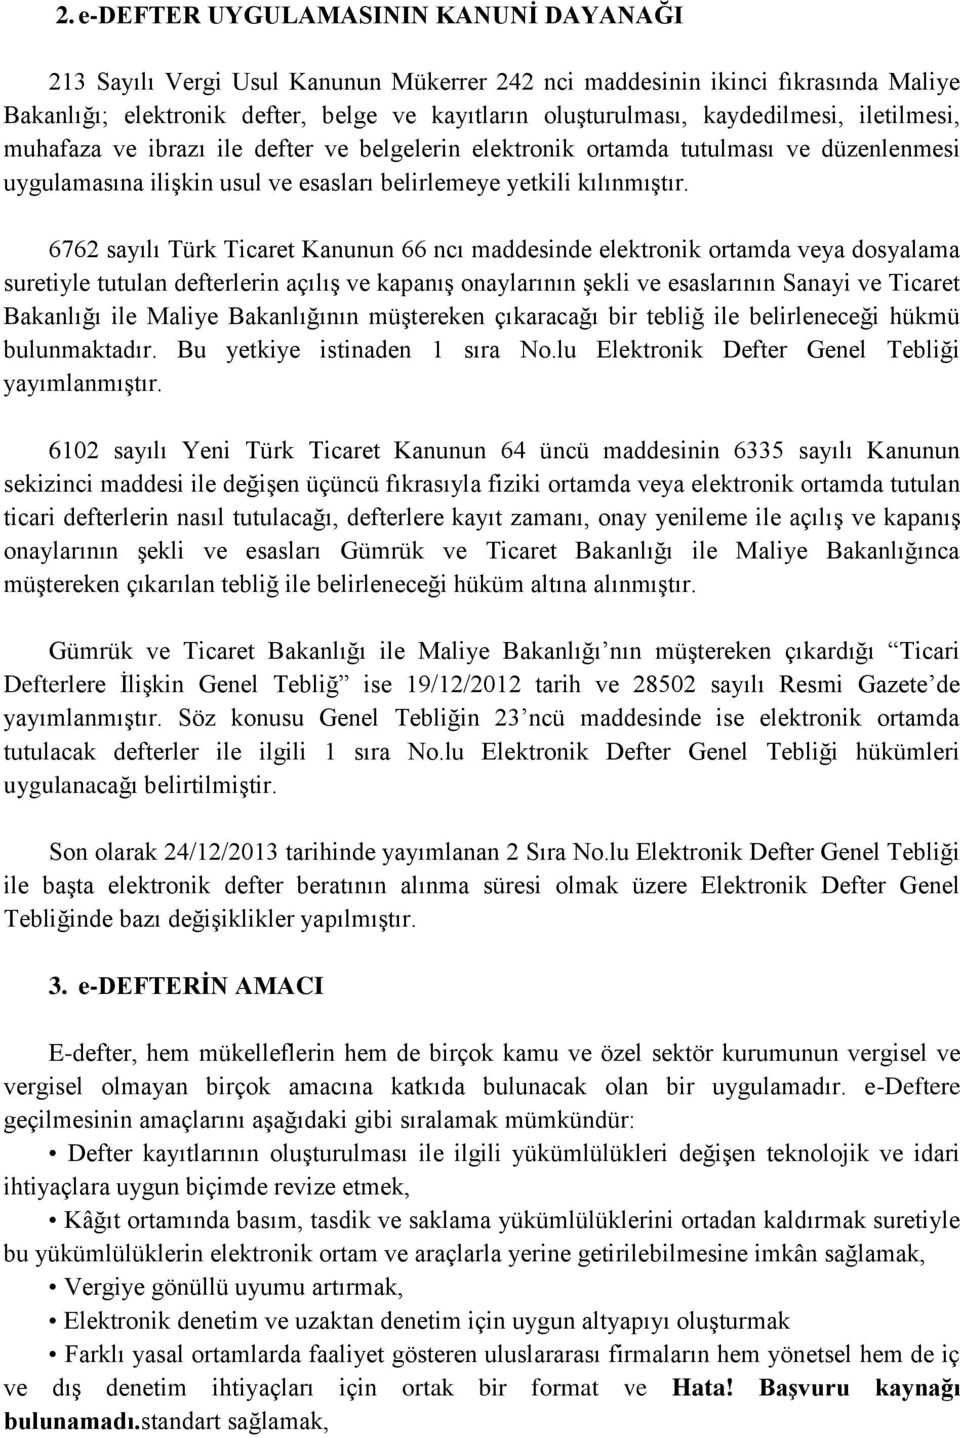 6762 sayılı Türk Ticaret Kanunun 66 ncı maddesinde elektronik ortamda veya dosyalama suretiyle tutulan defterlerin açılış ve kapanış onaylarının şekli ve esaslarının Sanayi ve Ticaret Bakanlığı ile